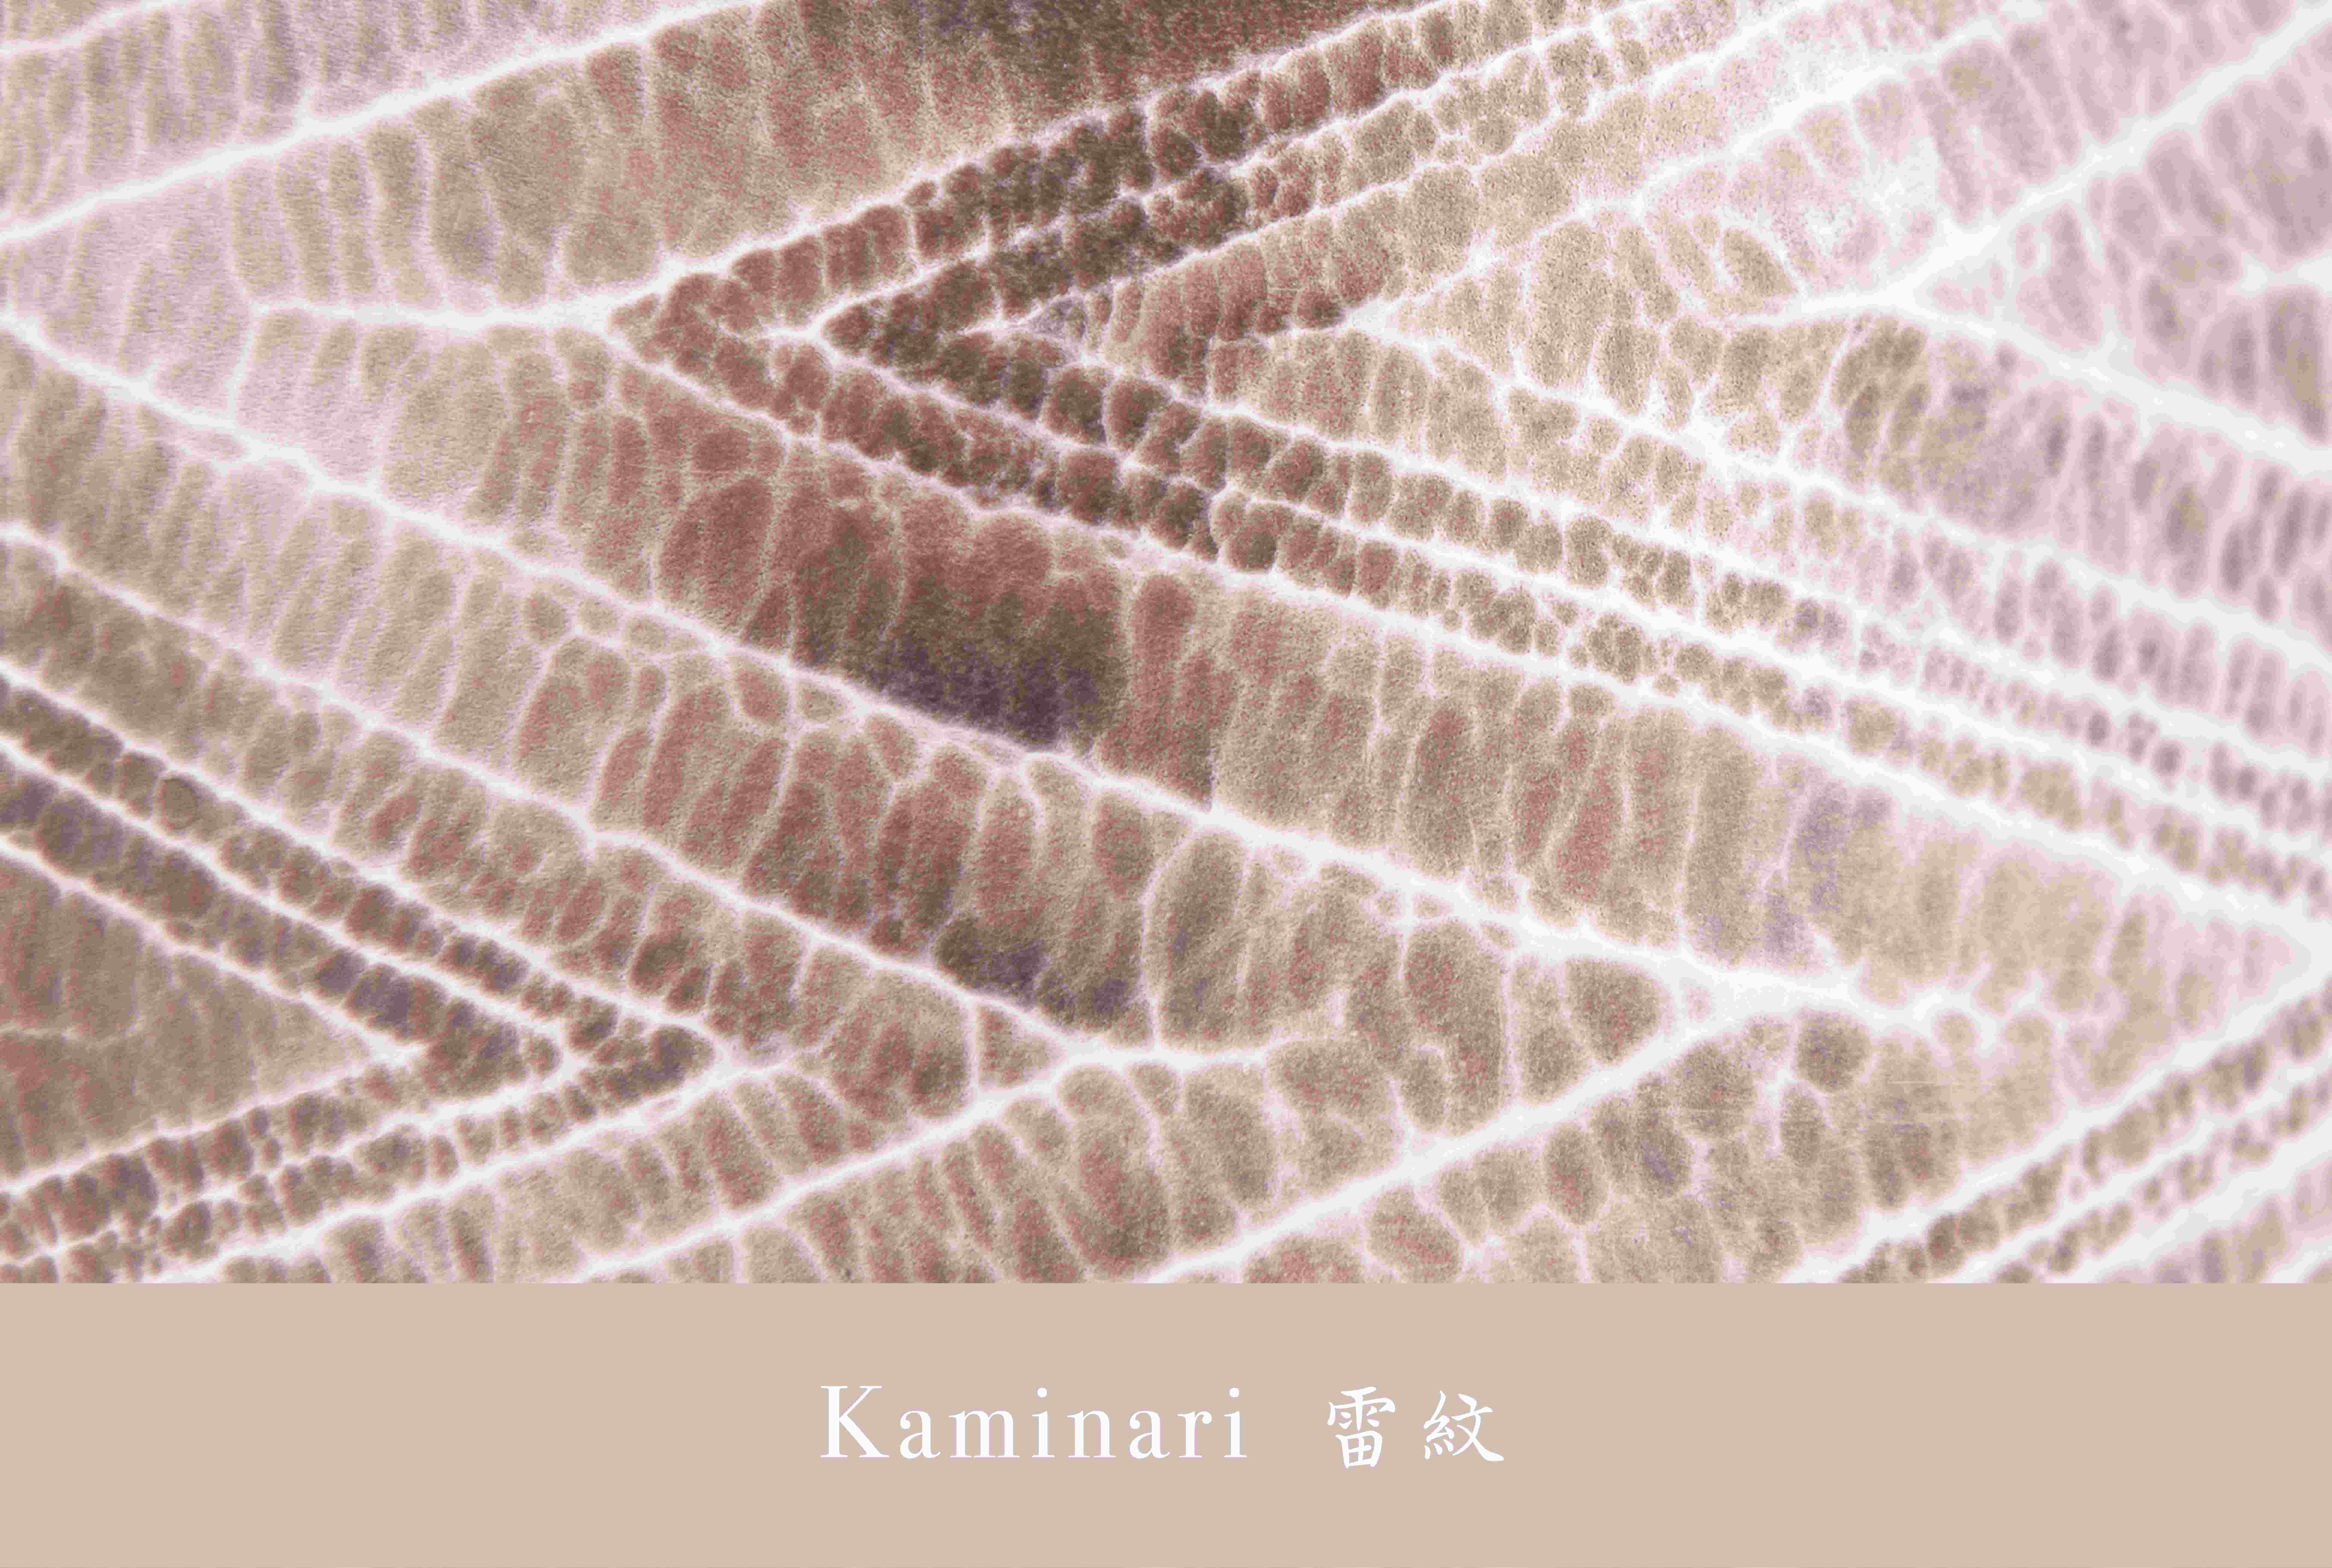 with title Kaminari 01 R